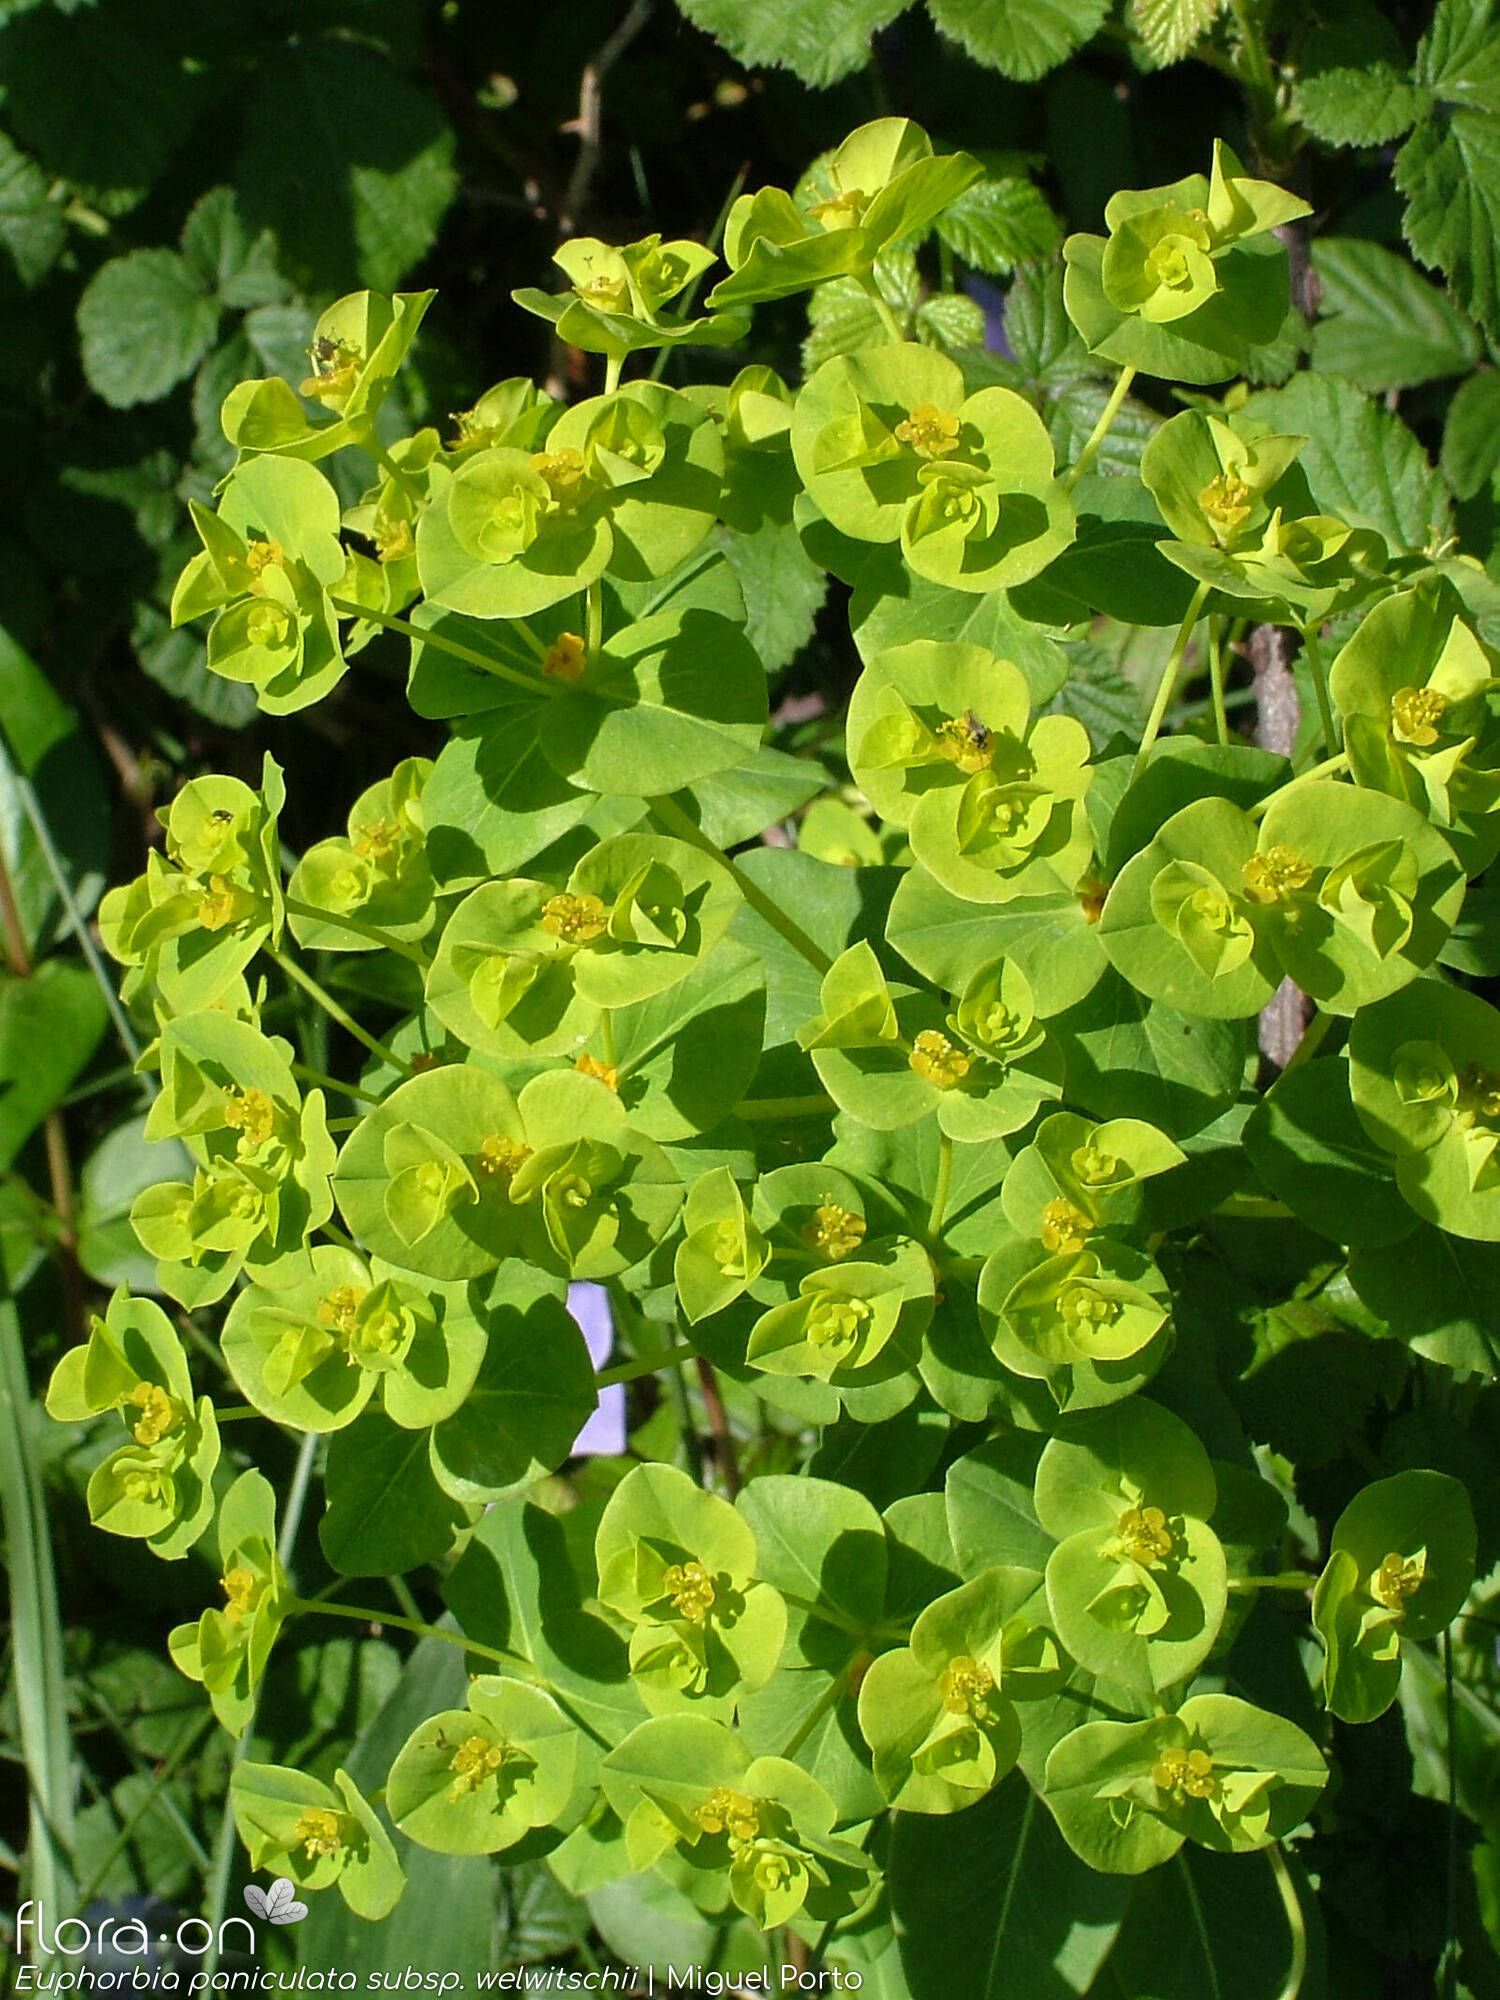 Euphorbia paniculata - Flor (geral) | Miguel Porto; CC BY-NC 4.0